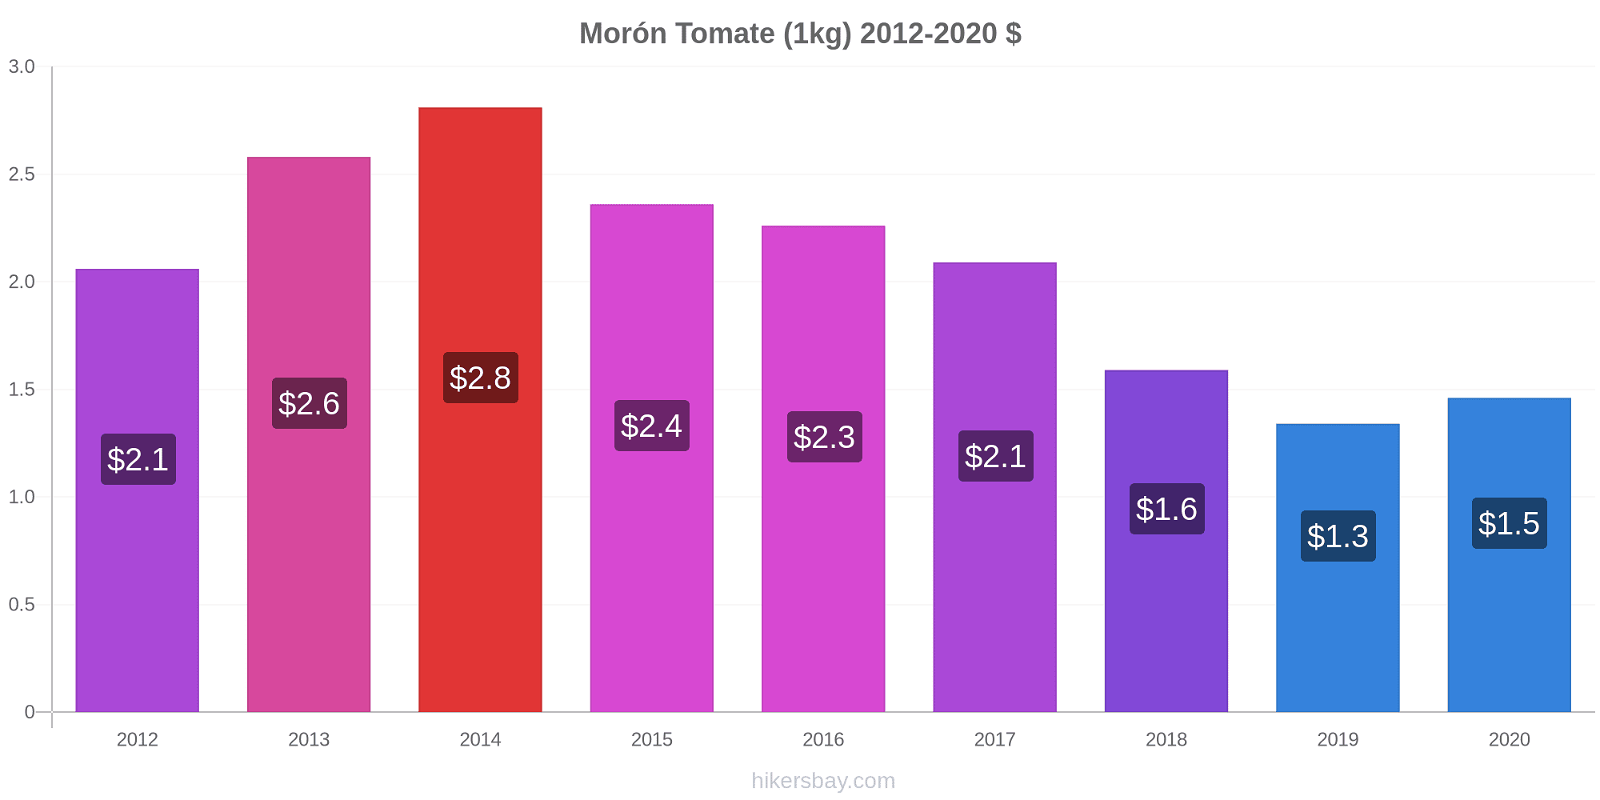 Morón cambios de precios Tomate (1kg) hikersbay.com